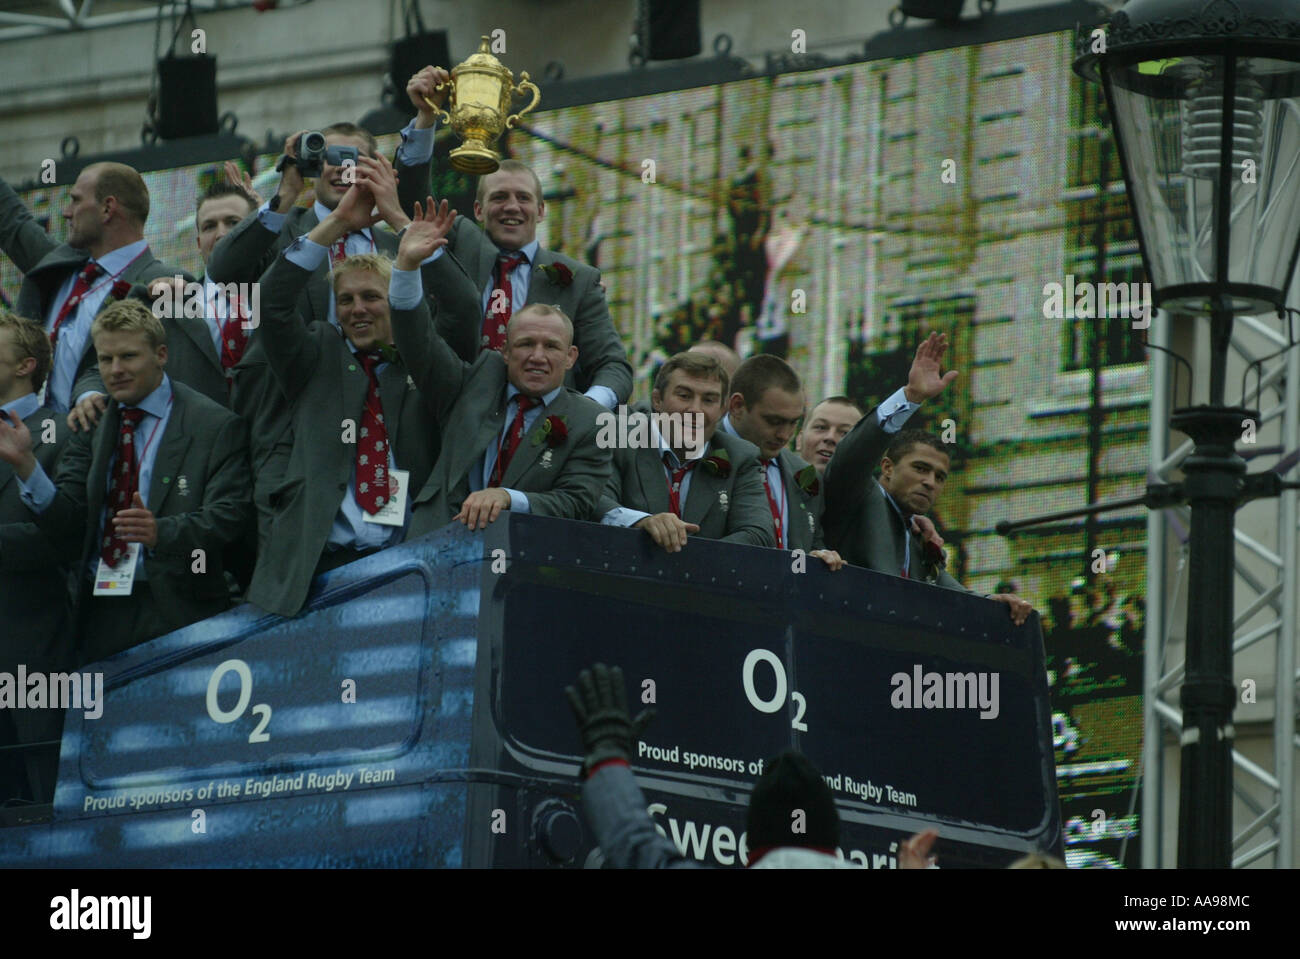 L'Inghilterra di rugby di arrivare in Trafalgar sqaure stringendo la William Webb Ellis WORLD CUP dopo aver vinto la Coppa del Mondo 2003 Foto Stock